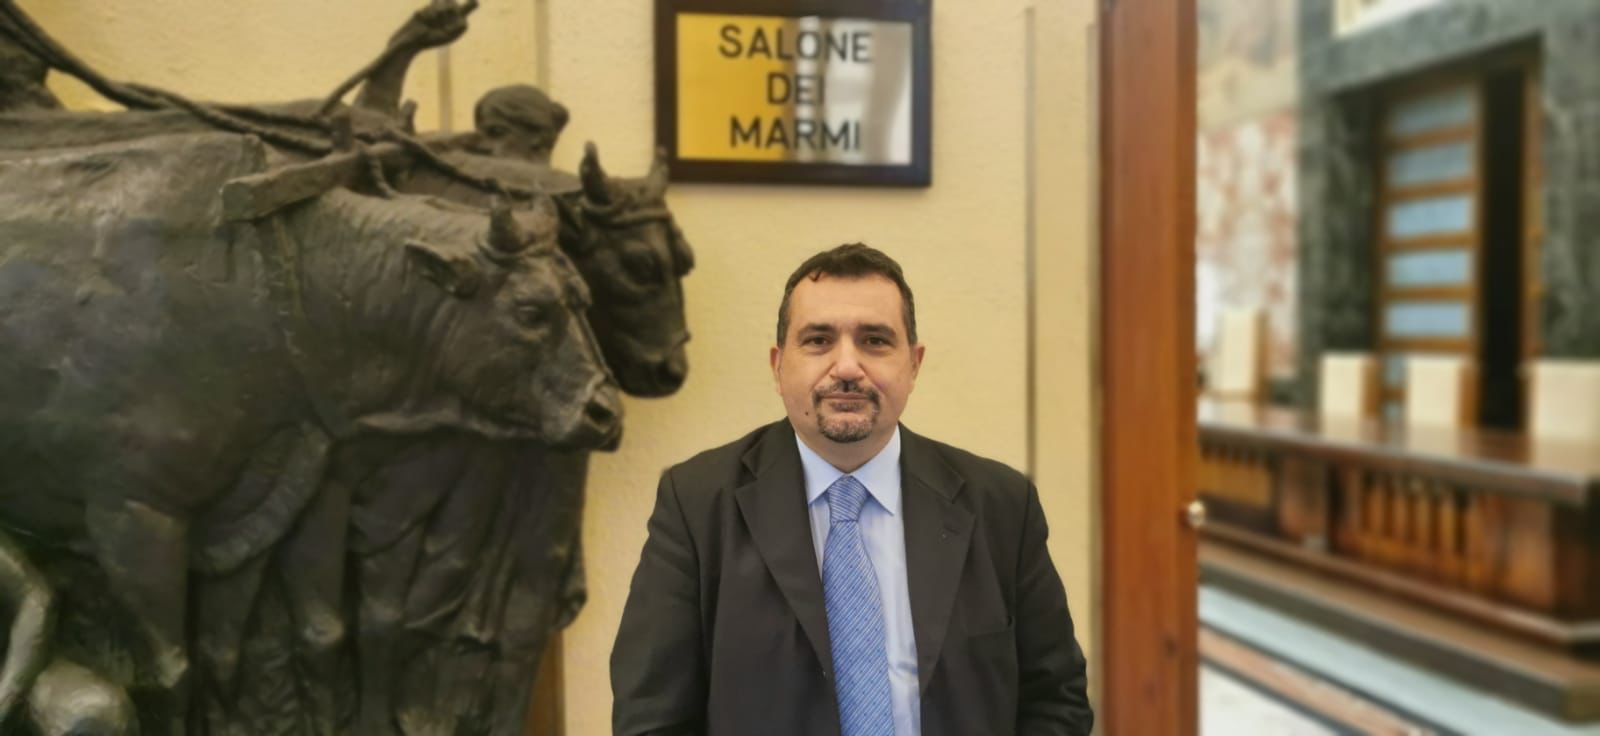 Salerno: presidenza Consiglio comunale a Dario Loffredo, Catello Lambiase “Maggioranza premia indagati anziché merito”